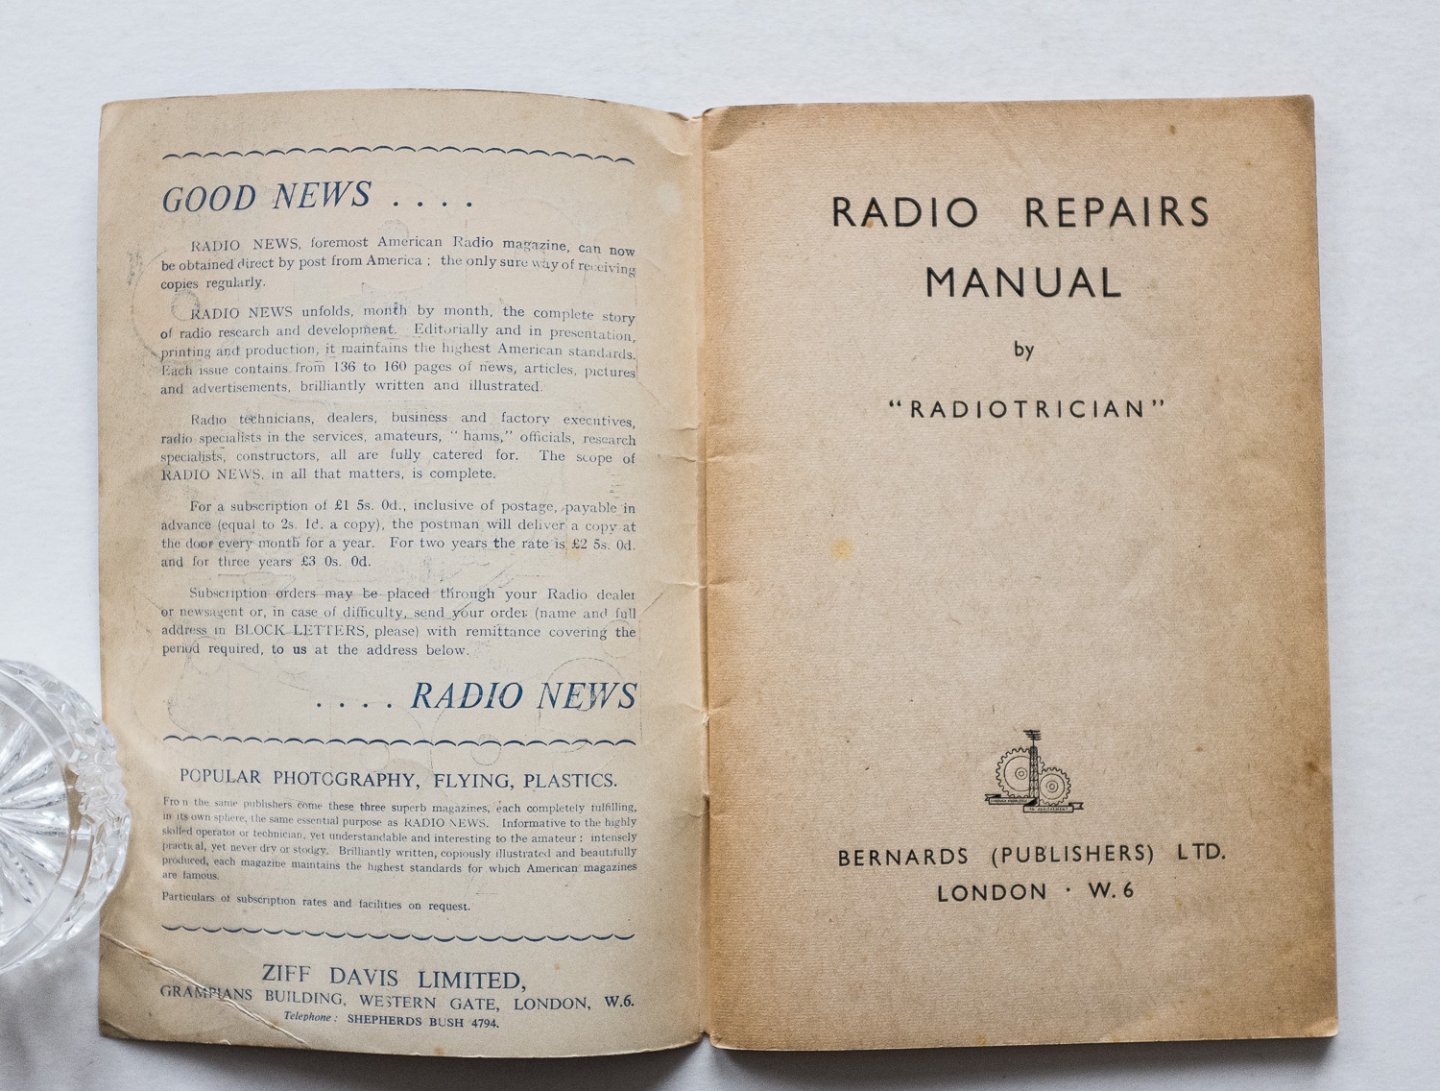 Radiotrician - Radio repairs manual